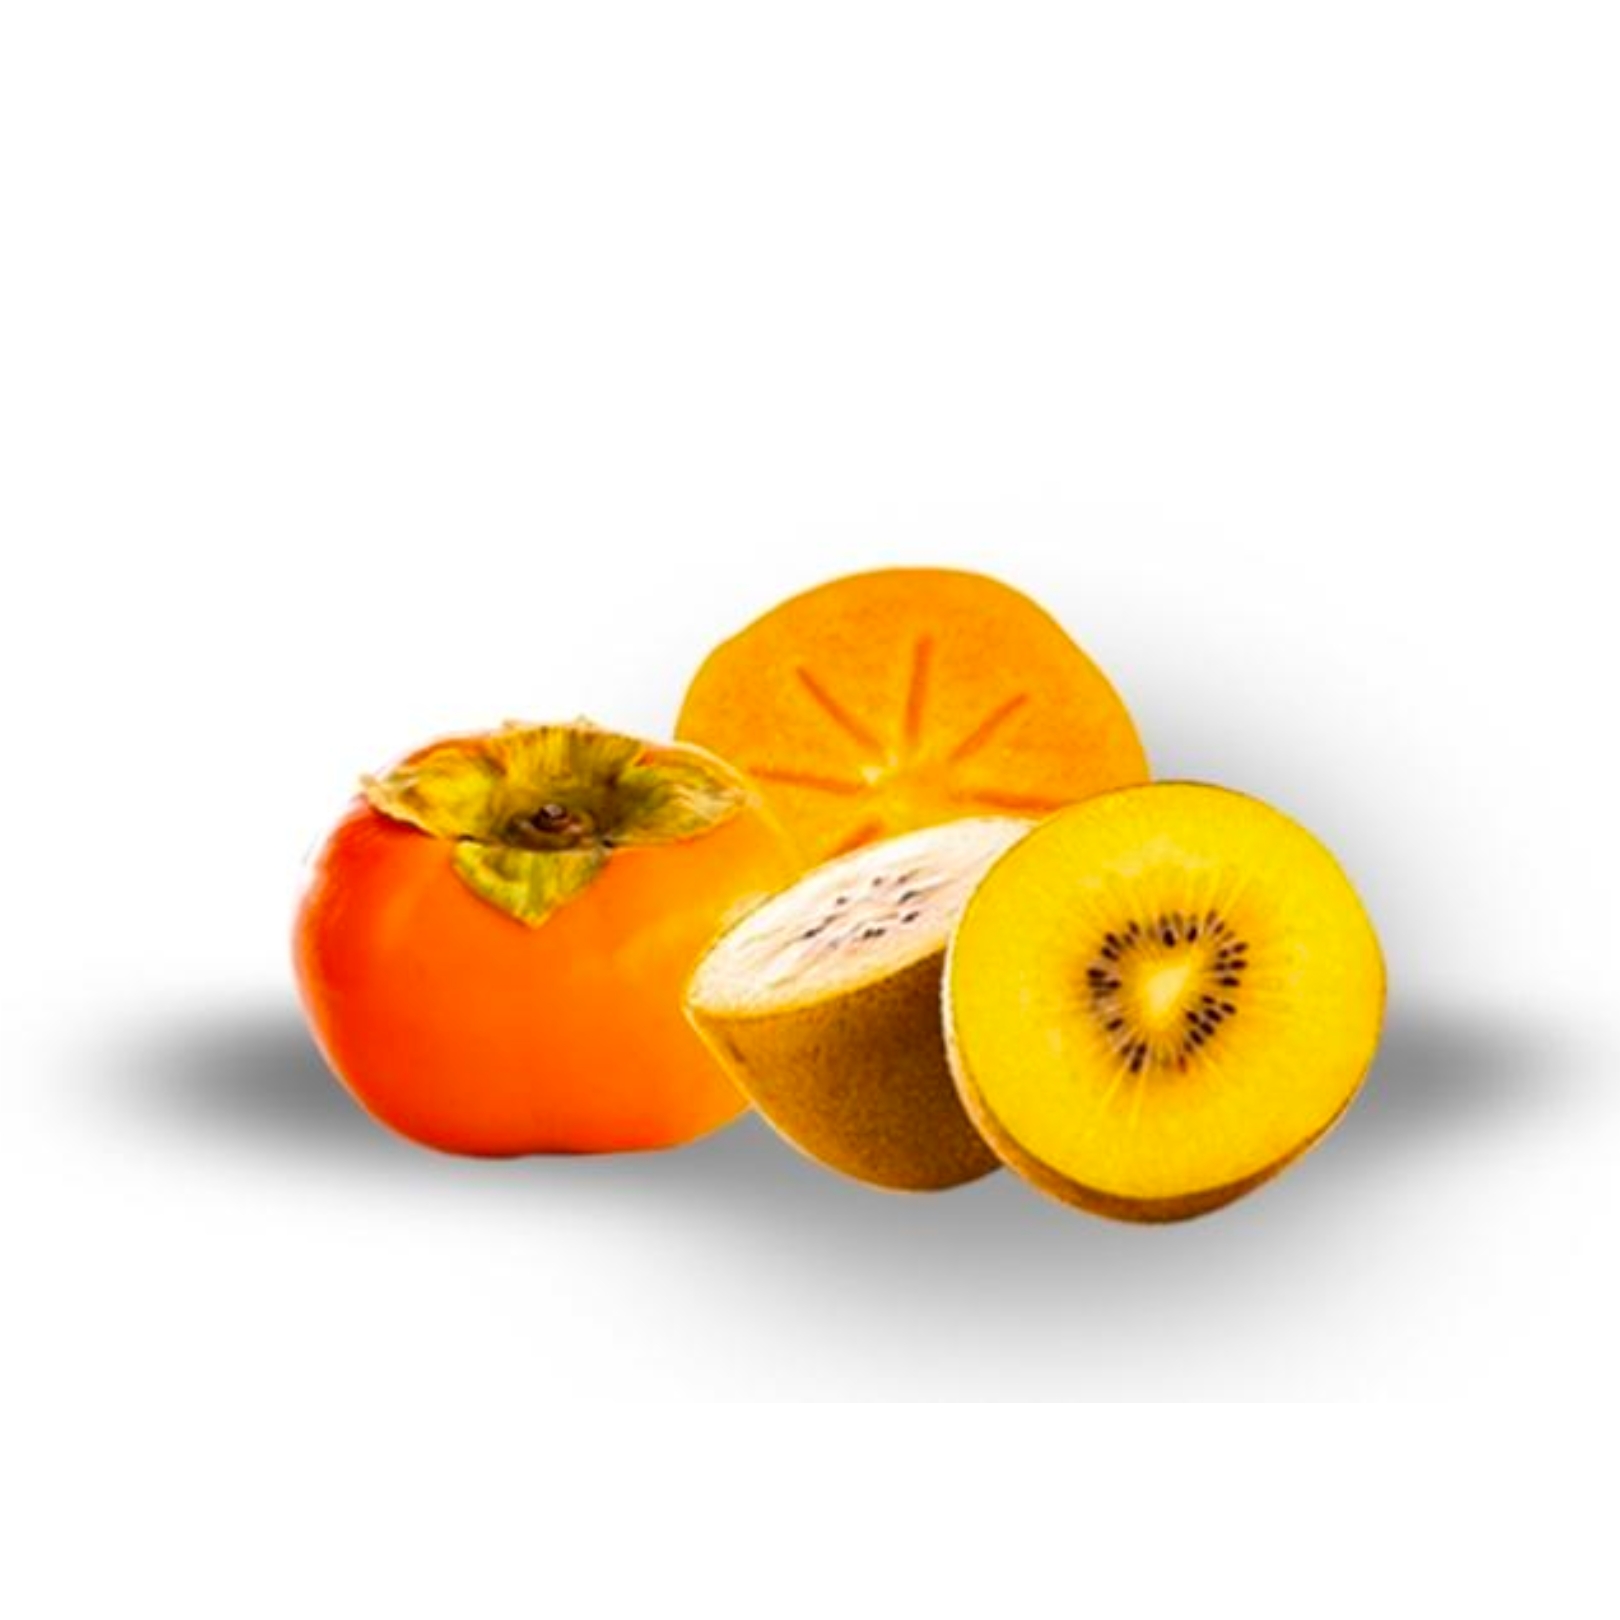 Buy Persimmon Kiwifruit Online NZ